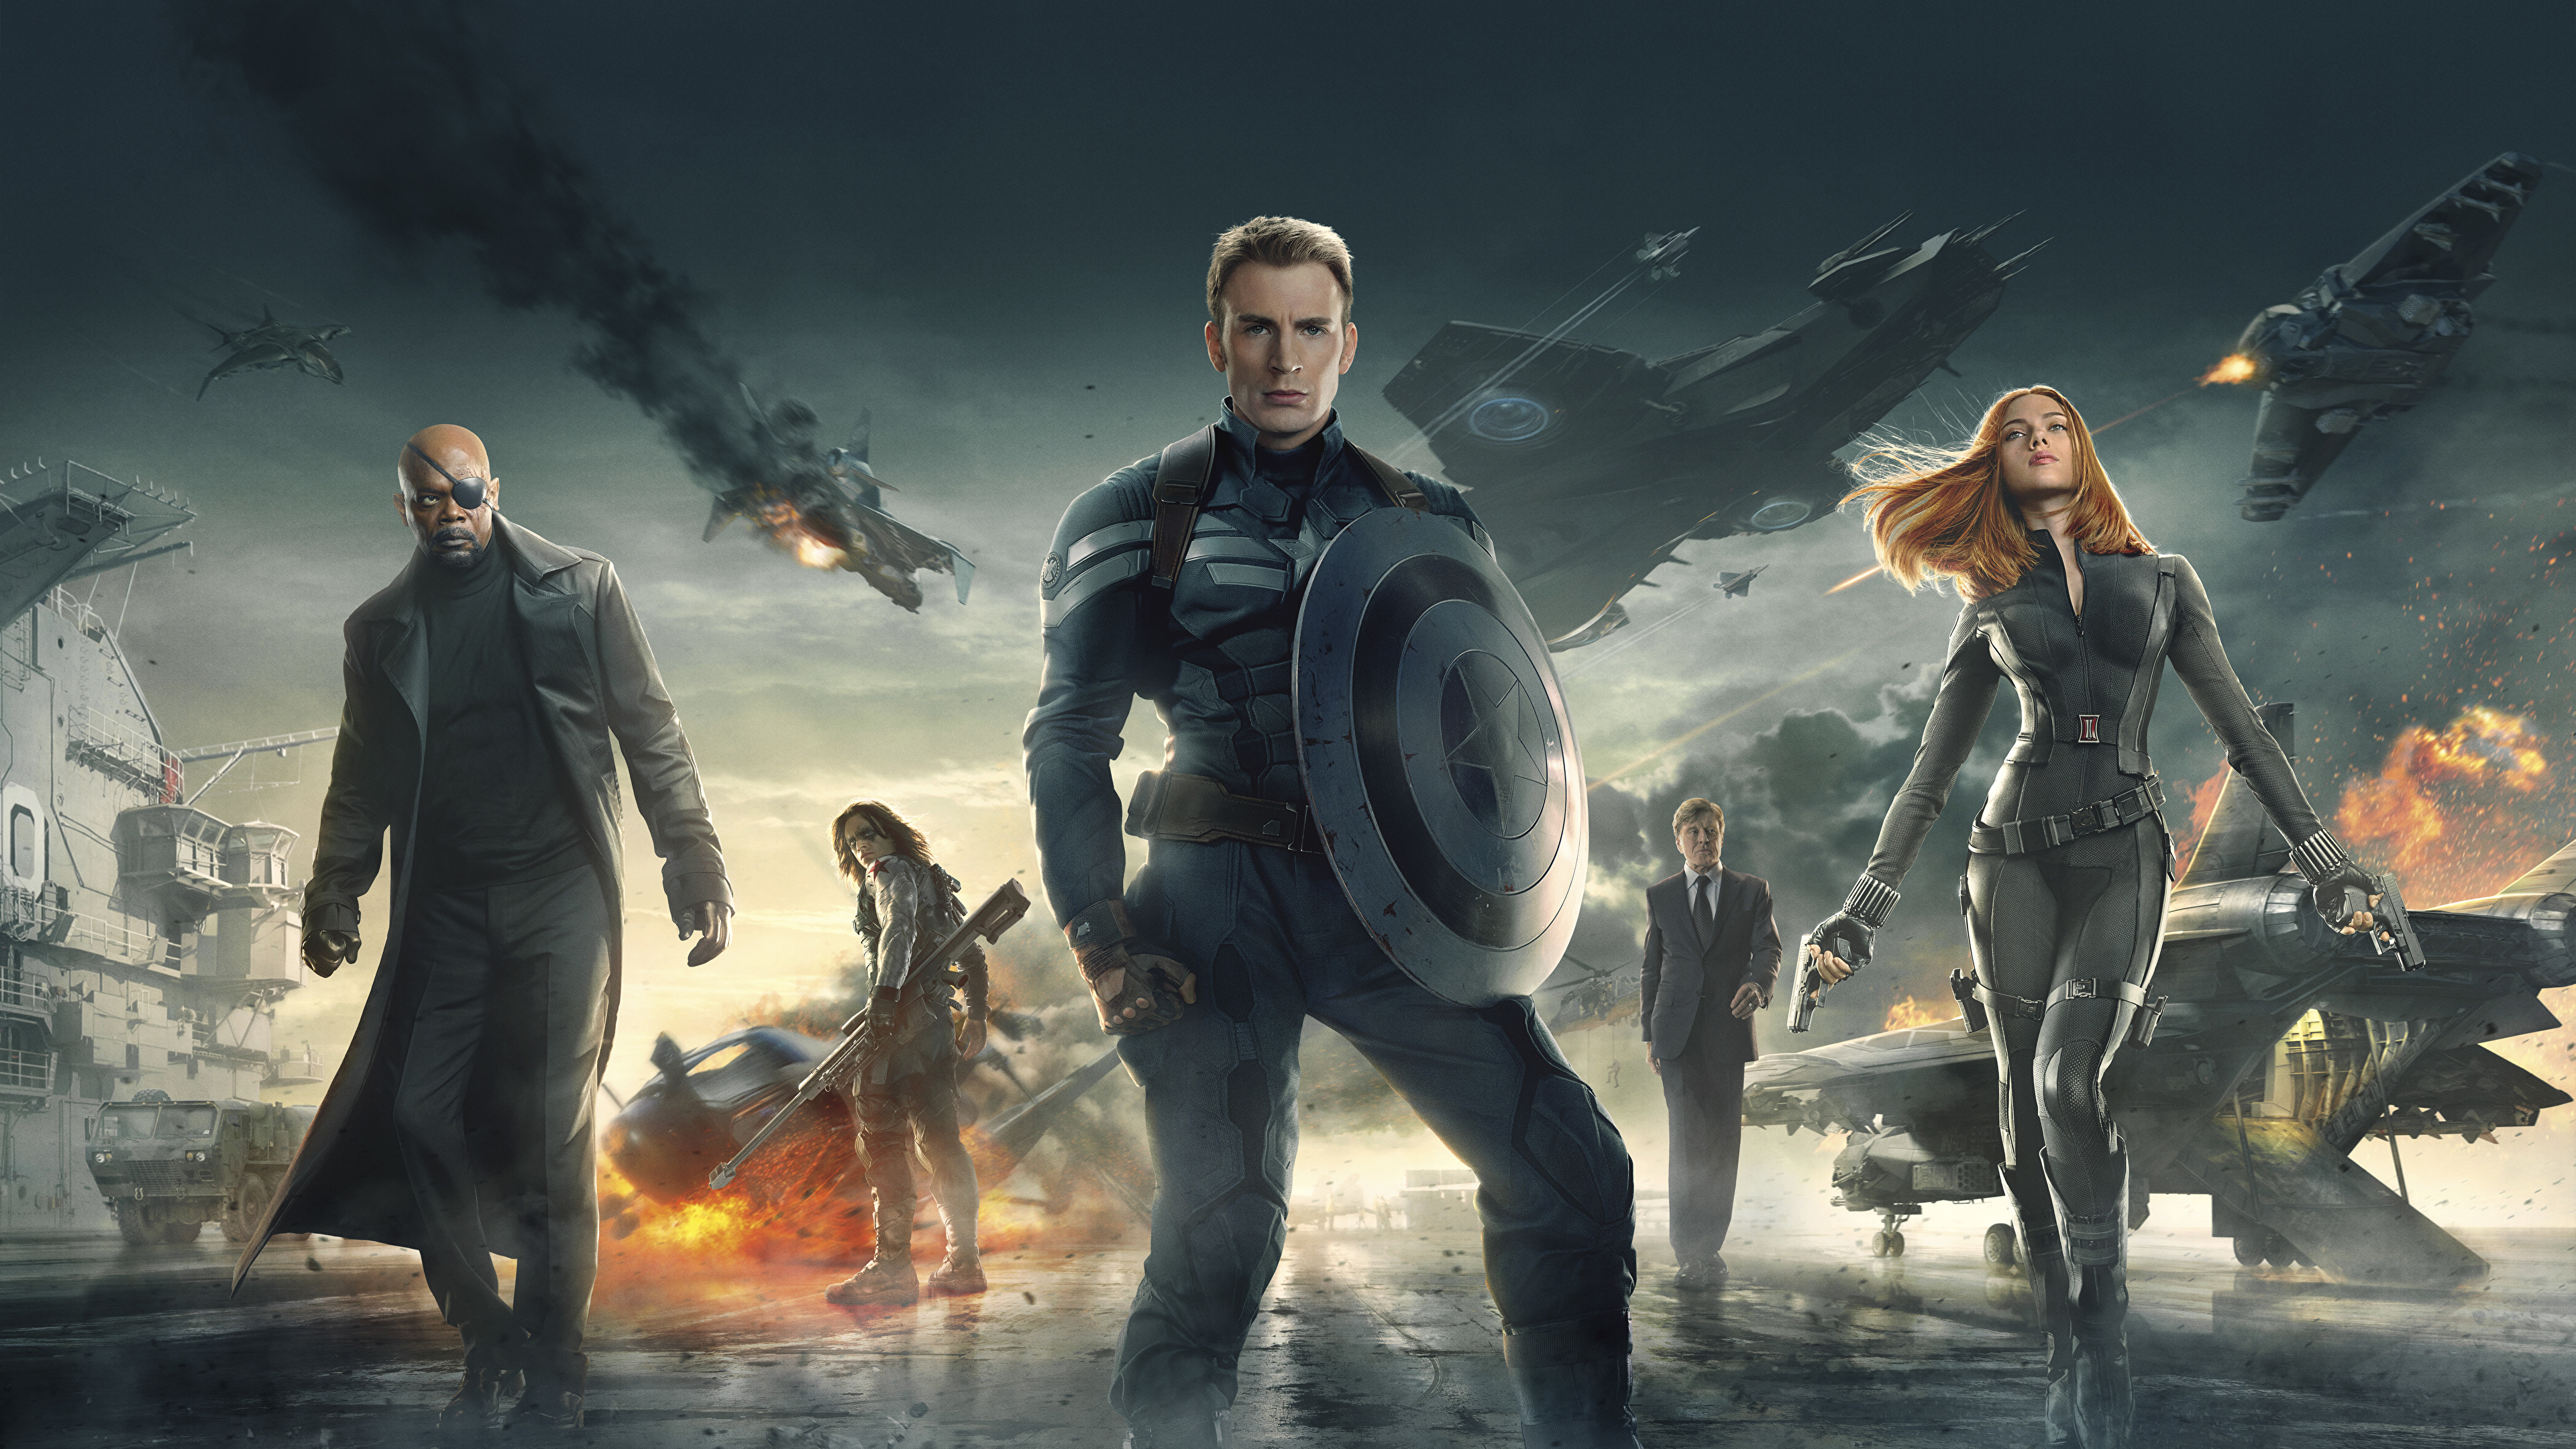 Другая заставка. Первый мститель: другая война (2014). Капитан Америка другая война. Капитан Америка зимний солдат 2014. Марвел Мстители другая война.